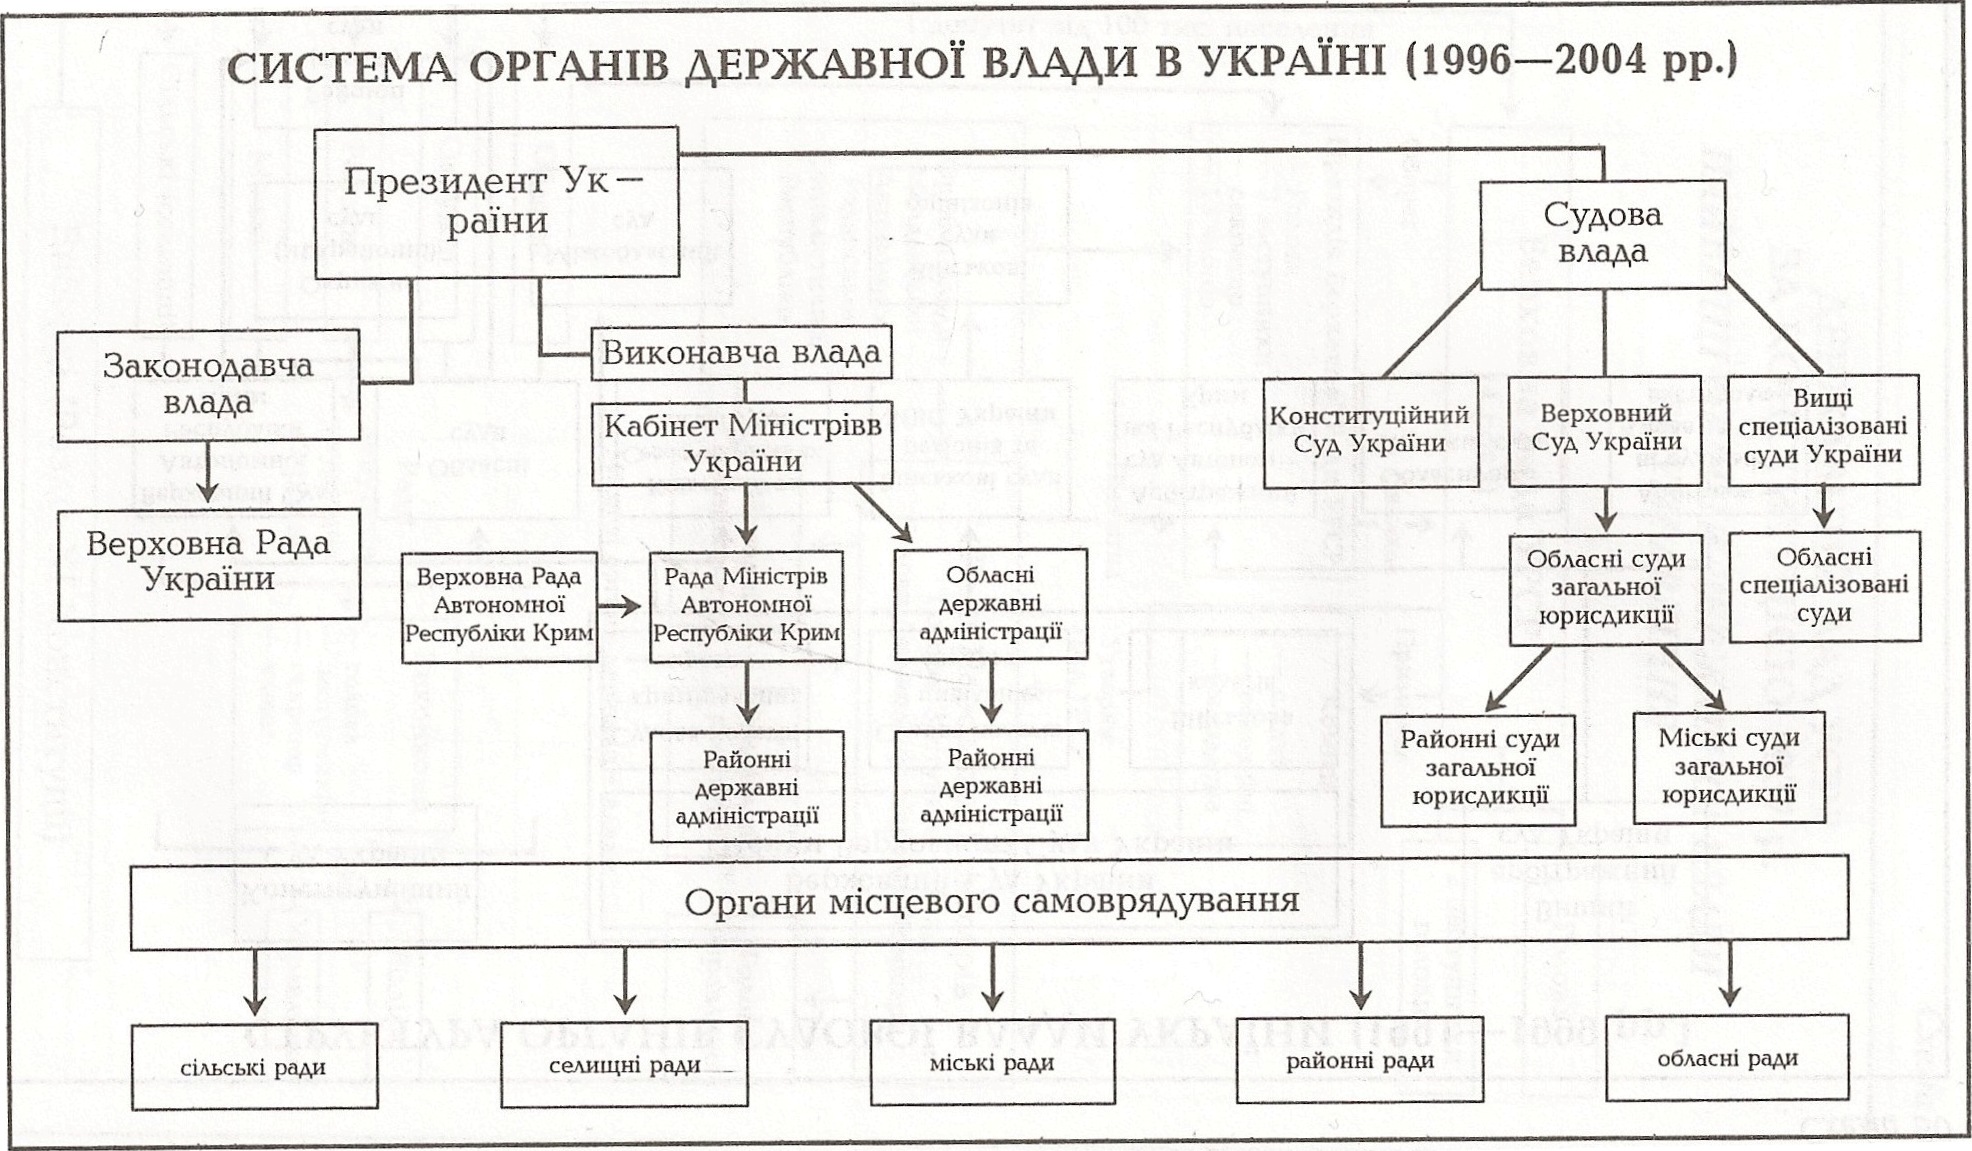 Таблица: Система органов государственной власти в Украине (1996 - 2004 гг.)